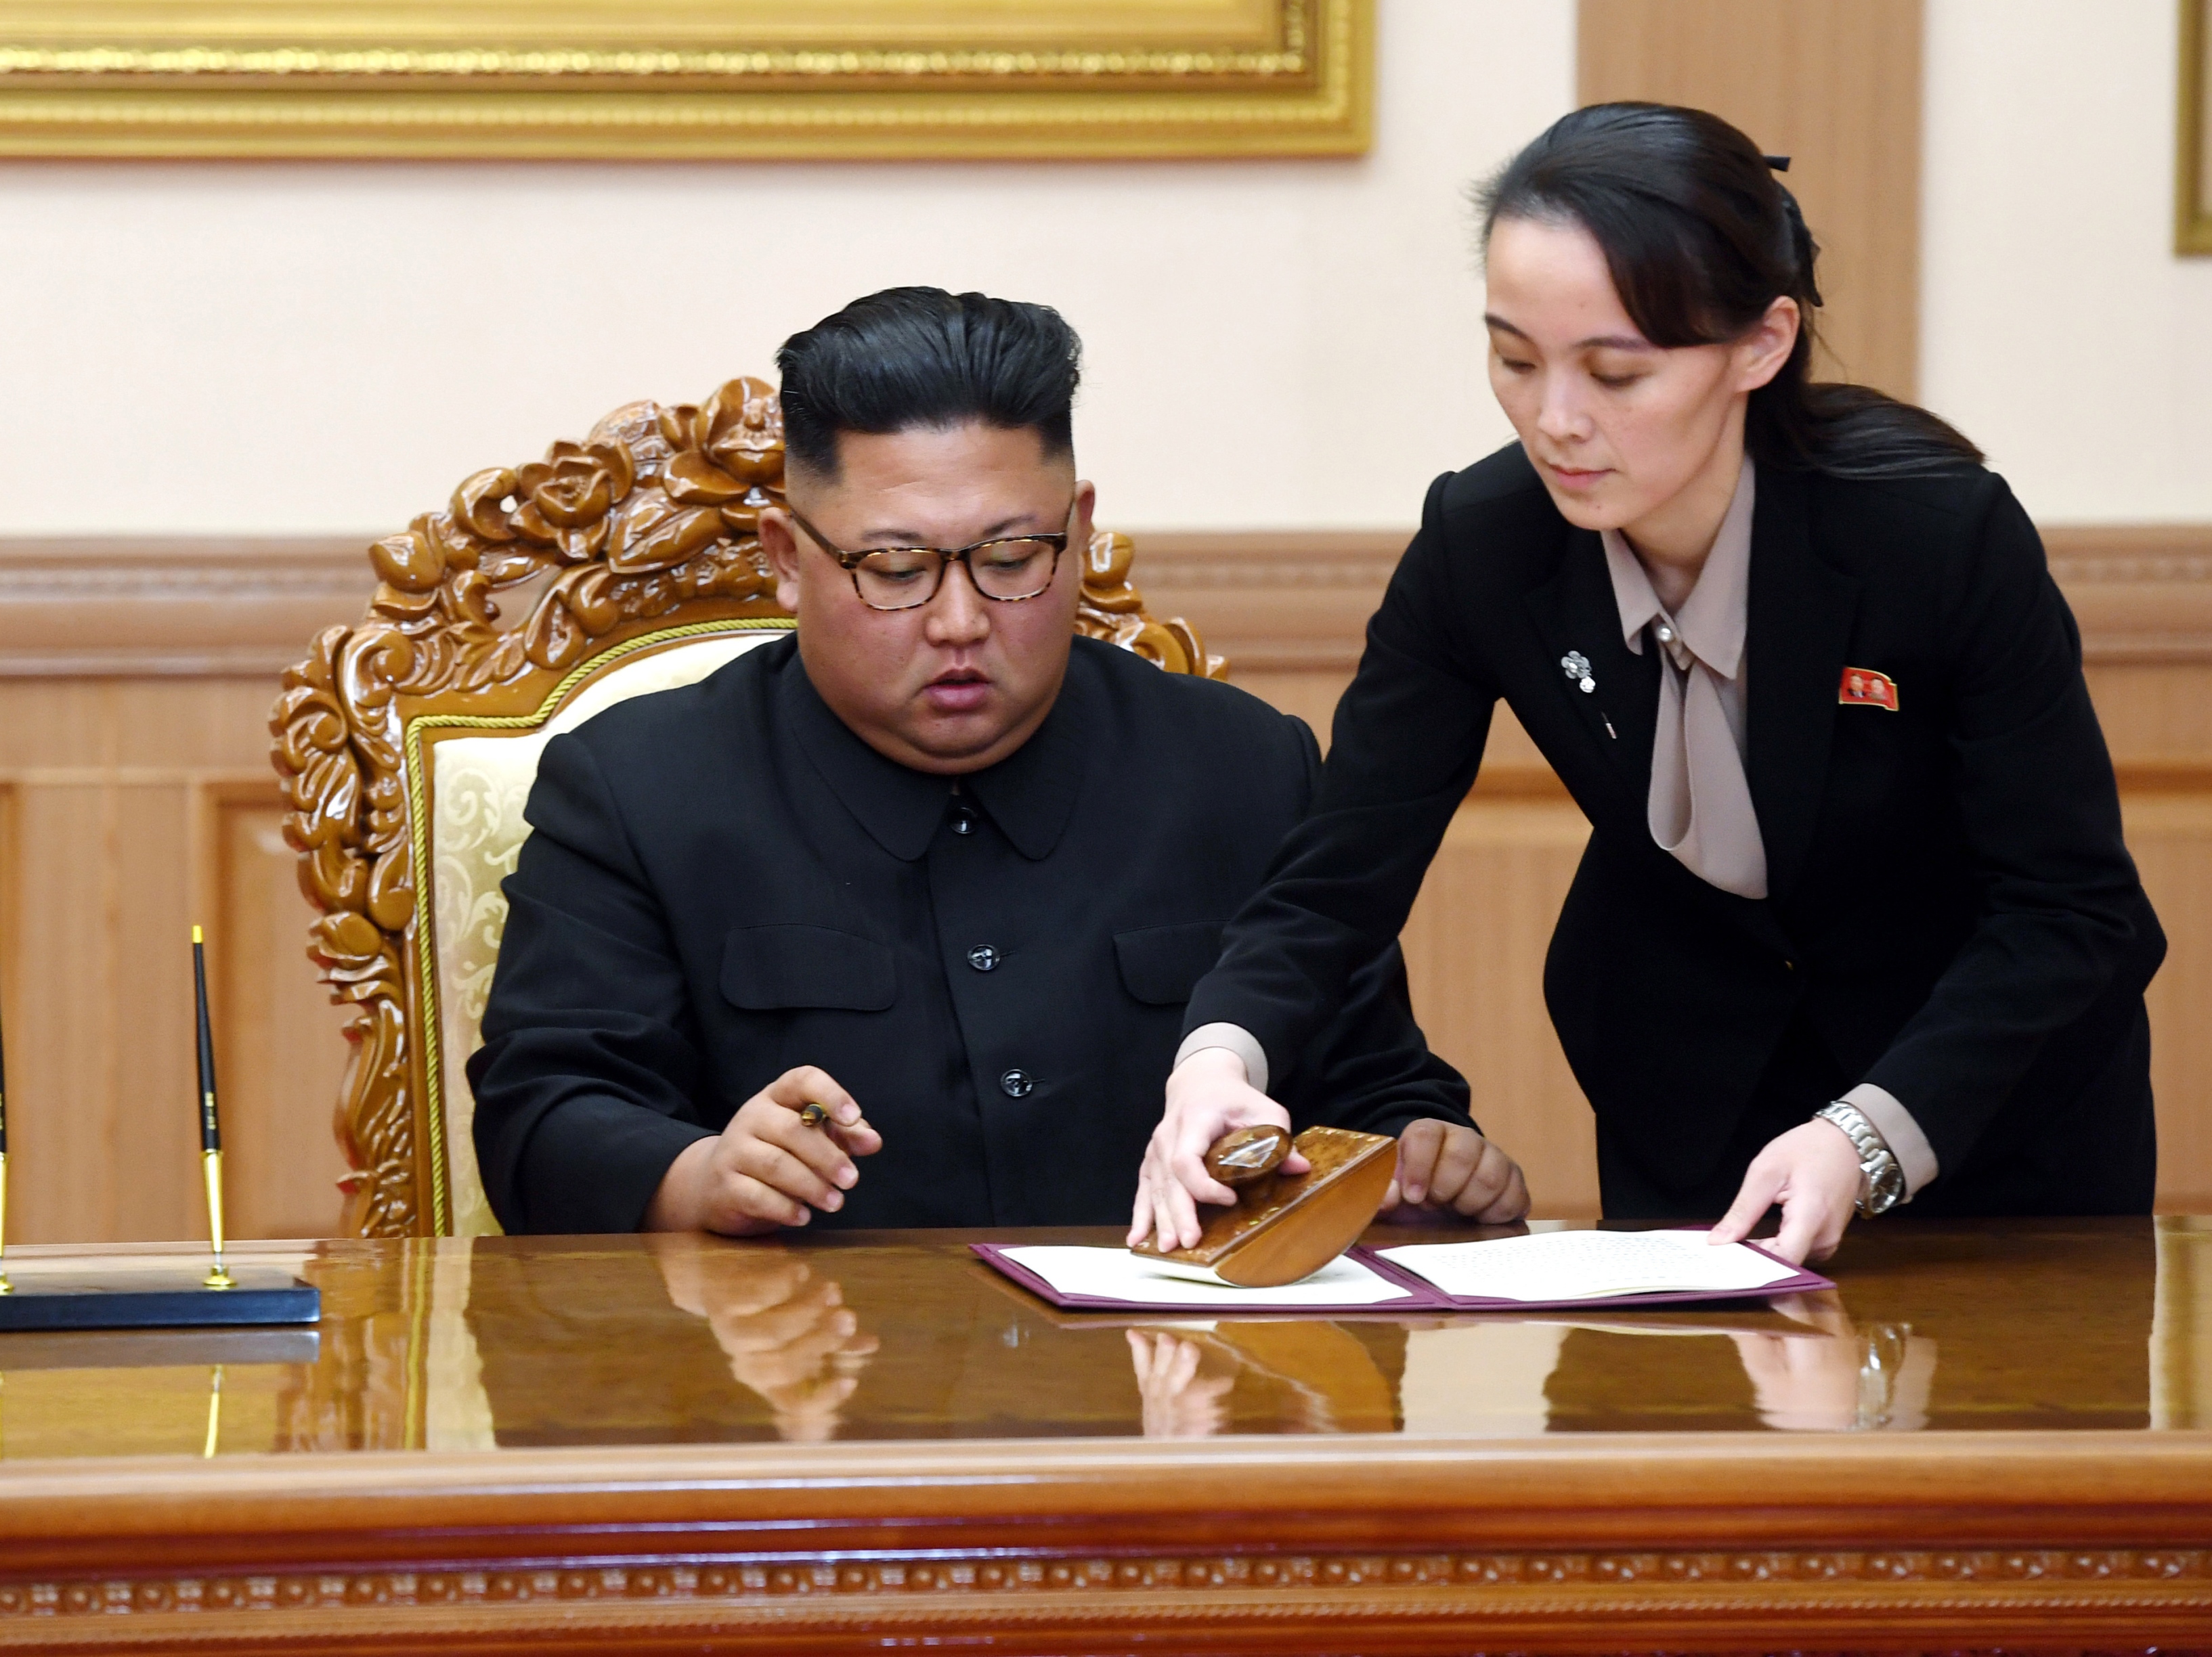 شقيقة كيم تهاجم رئيس كوريا الجنوبية بضراوة